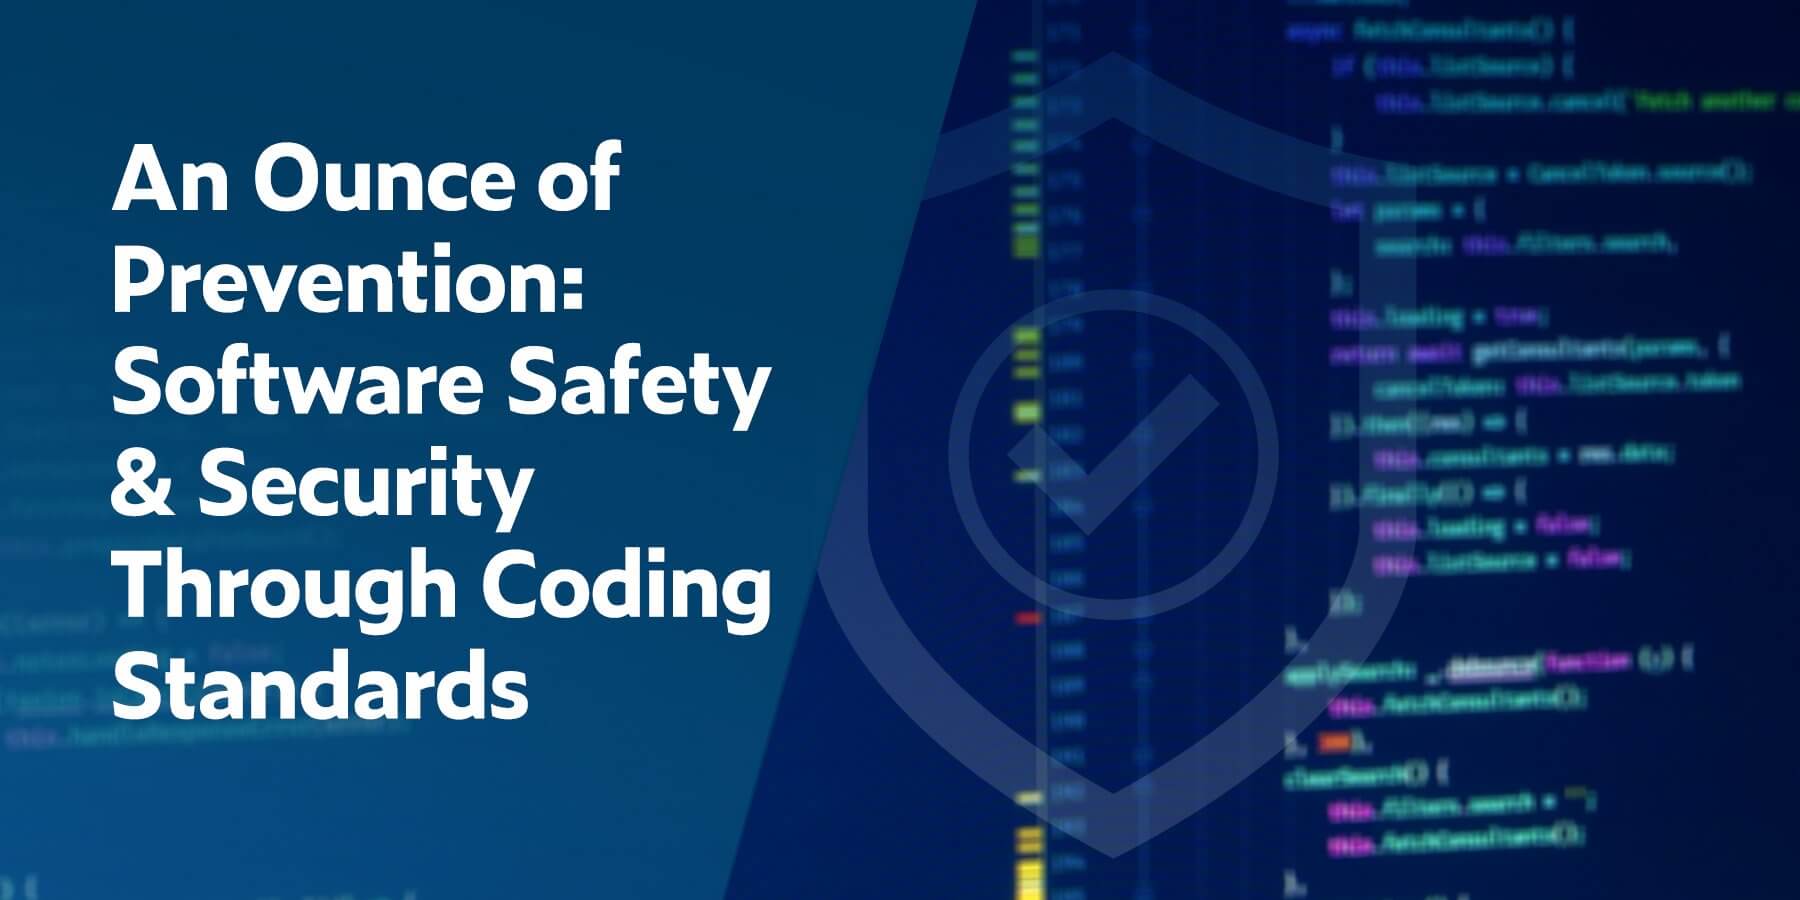 Une once de prévention: la sûreté et la sécurité grâce aux normes de codage des logiciels